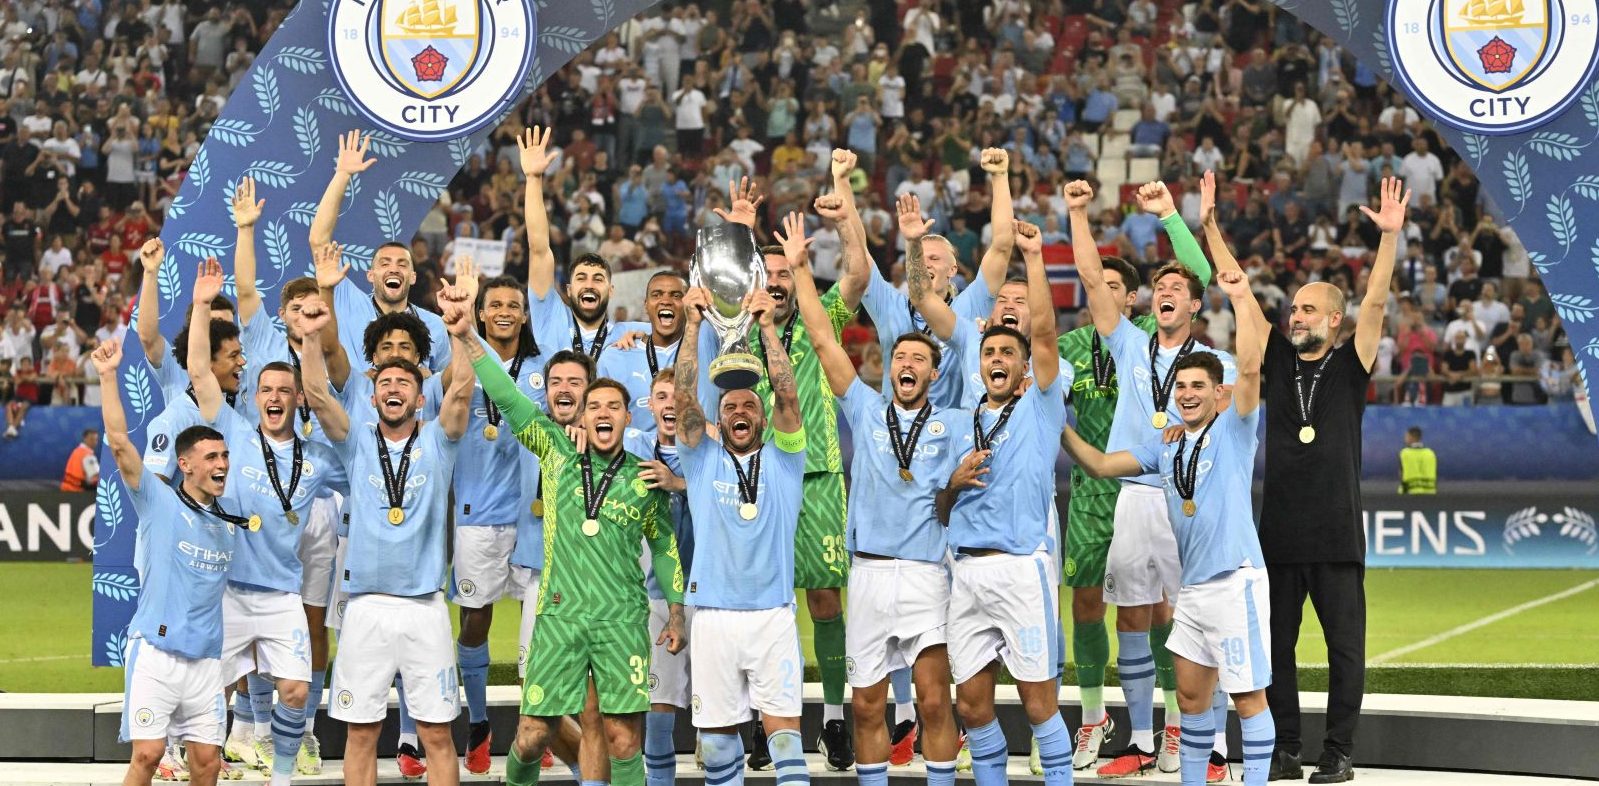 MANCHESTER City menjadi juara Piala Super Eropa untuk kali pertama, Kamis (17/8) dini hari WIB usai menang adu penalti atas Sevilla setelah kedua tim bermain imbang 1-1 di Athena.(Foto:www.informasiterpercaya.com)